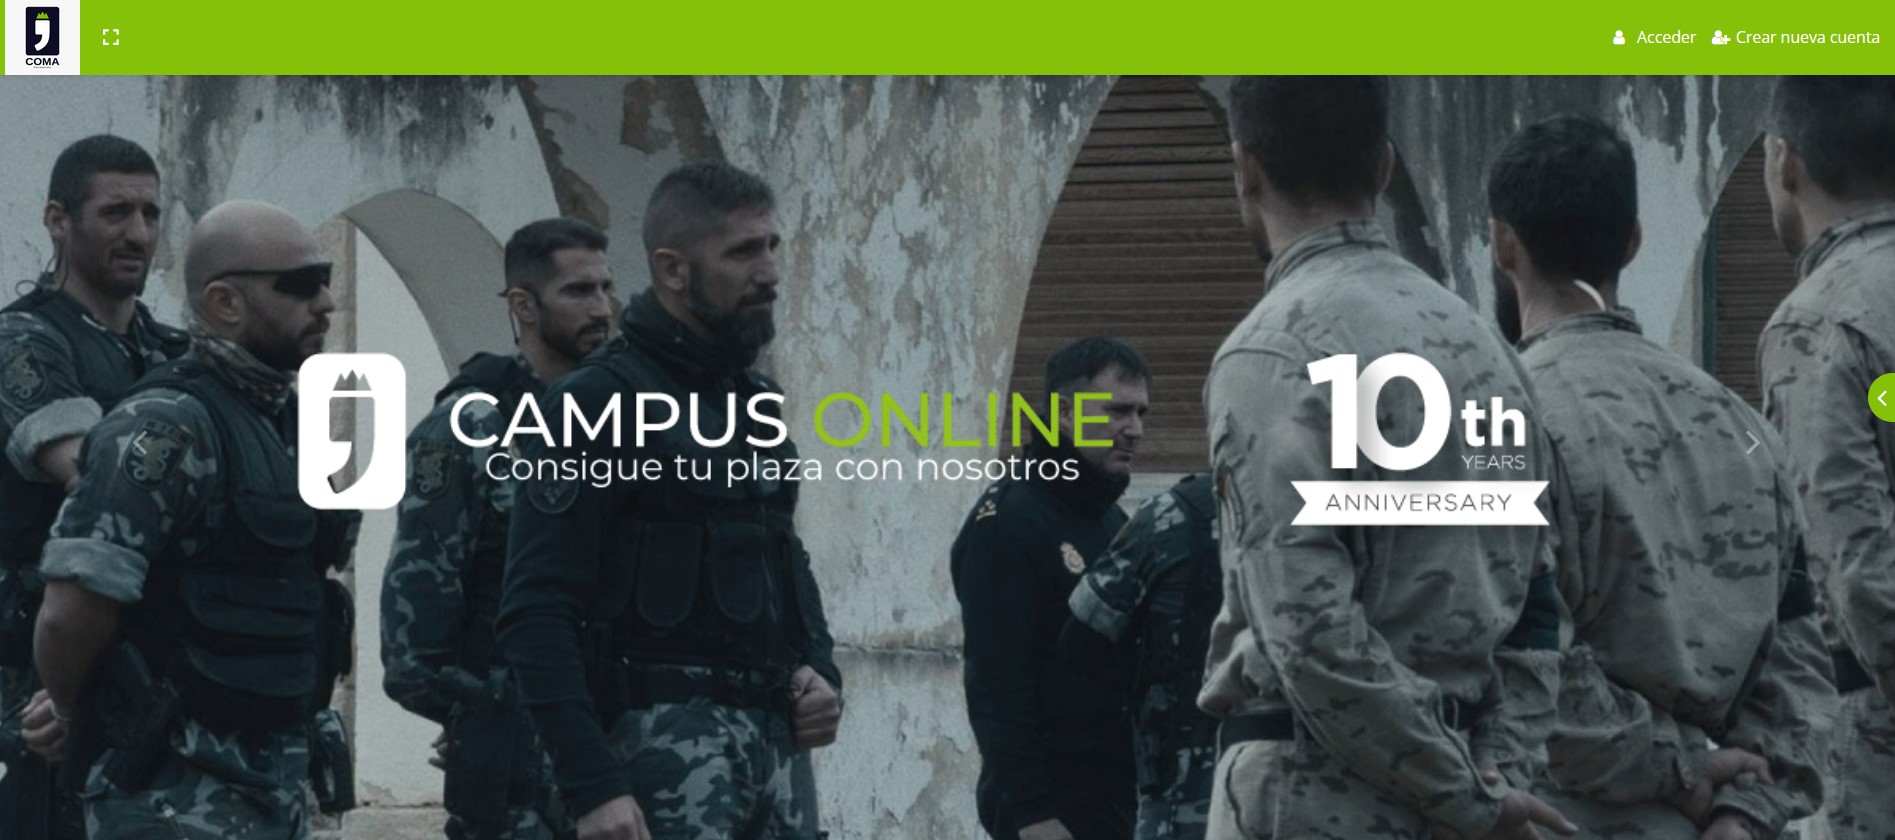 Academia Coma Formación - Campus online